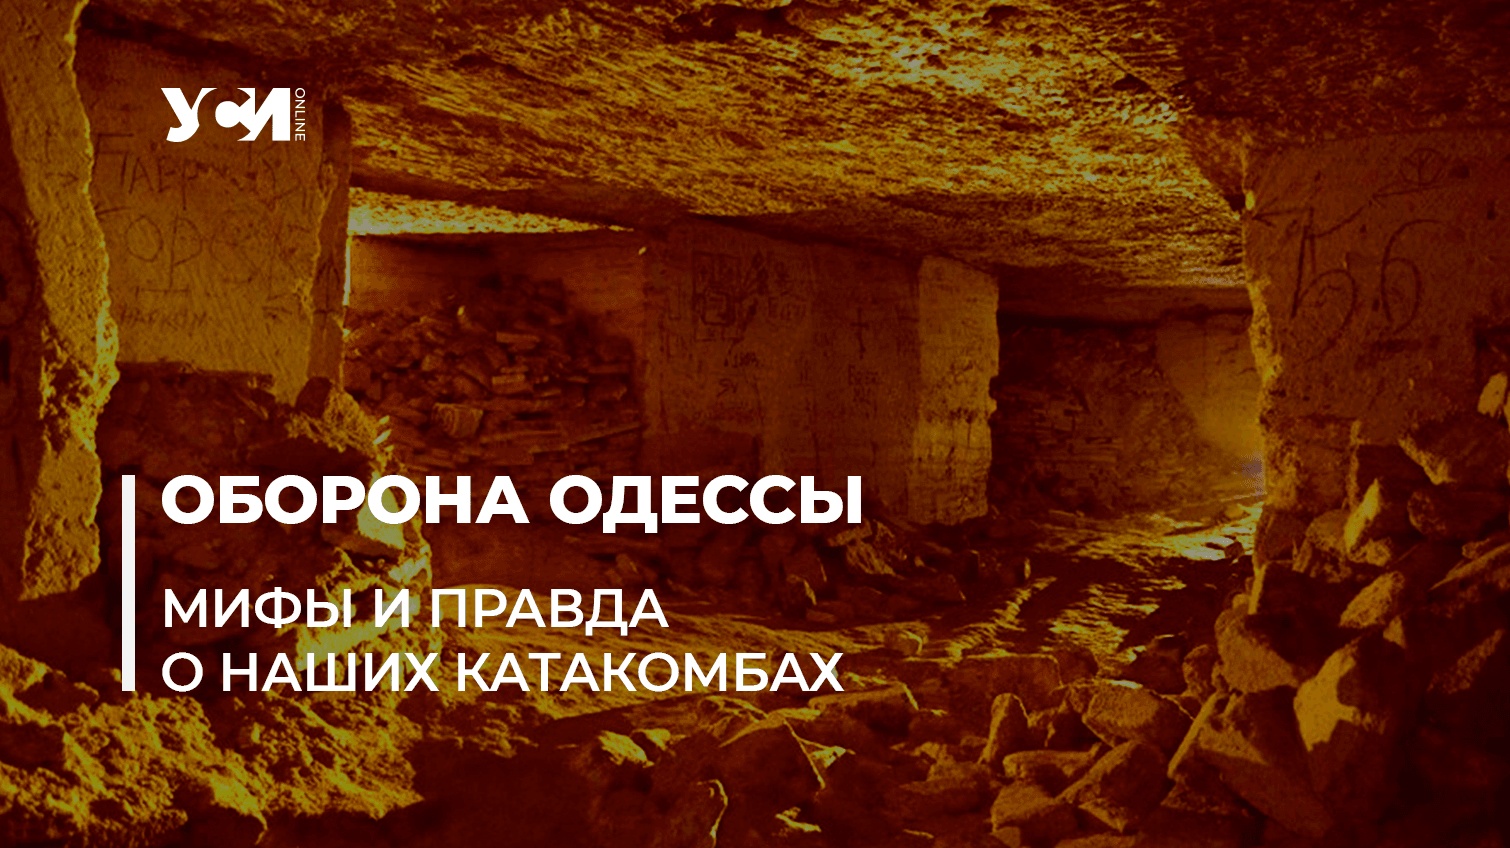 Одесские катакомбы неприменимы ни для эвакуации, ни для партизанских действий, — историк «фото»